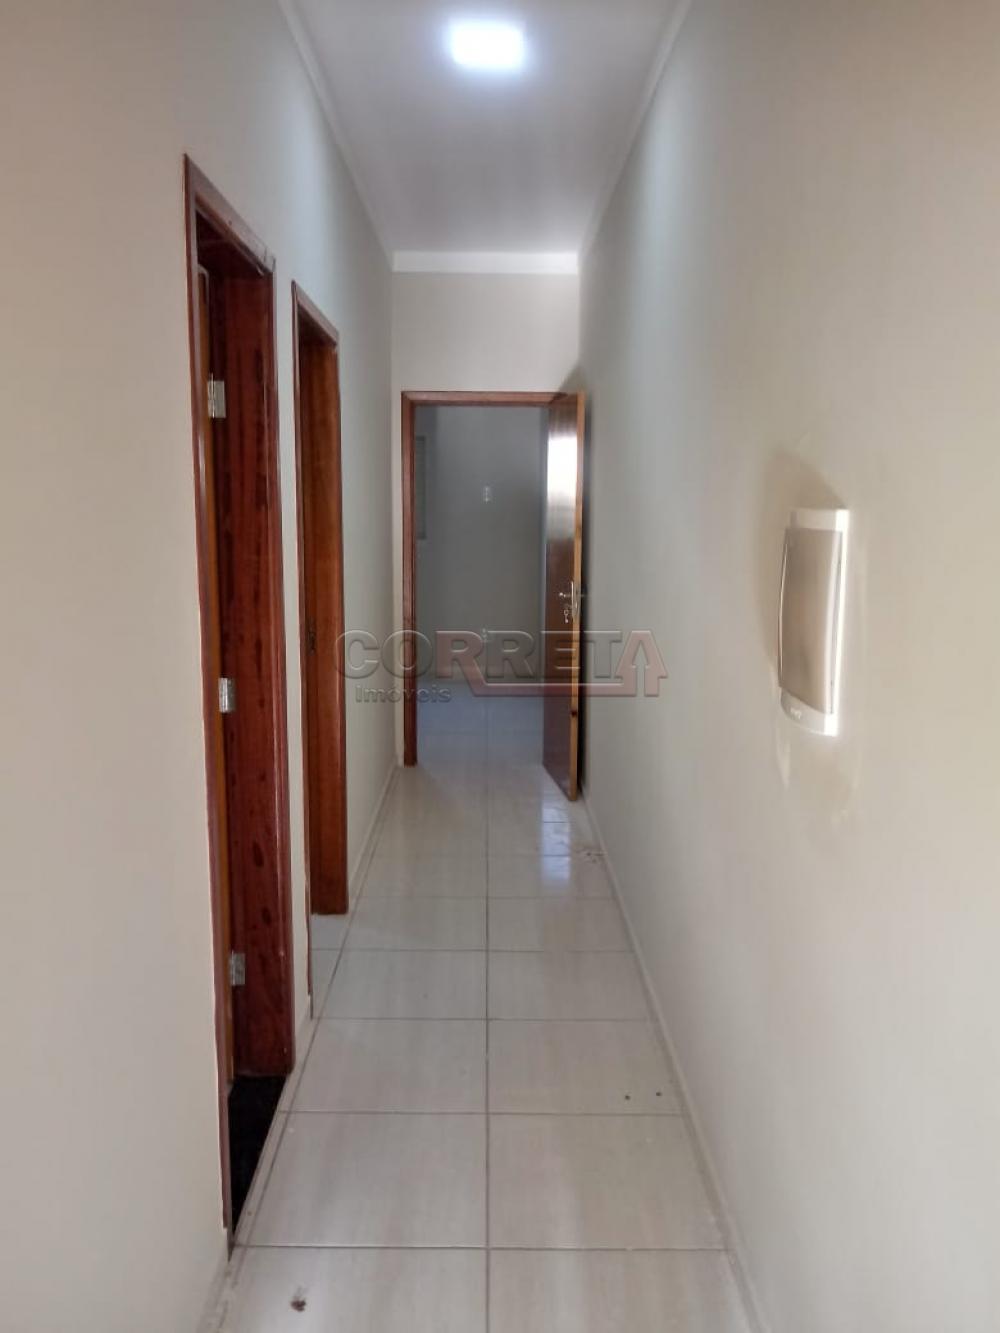 Comprar Casa / Residencial em Araçatuba R$ 175.000,00 - Foto 5